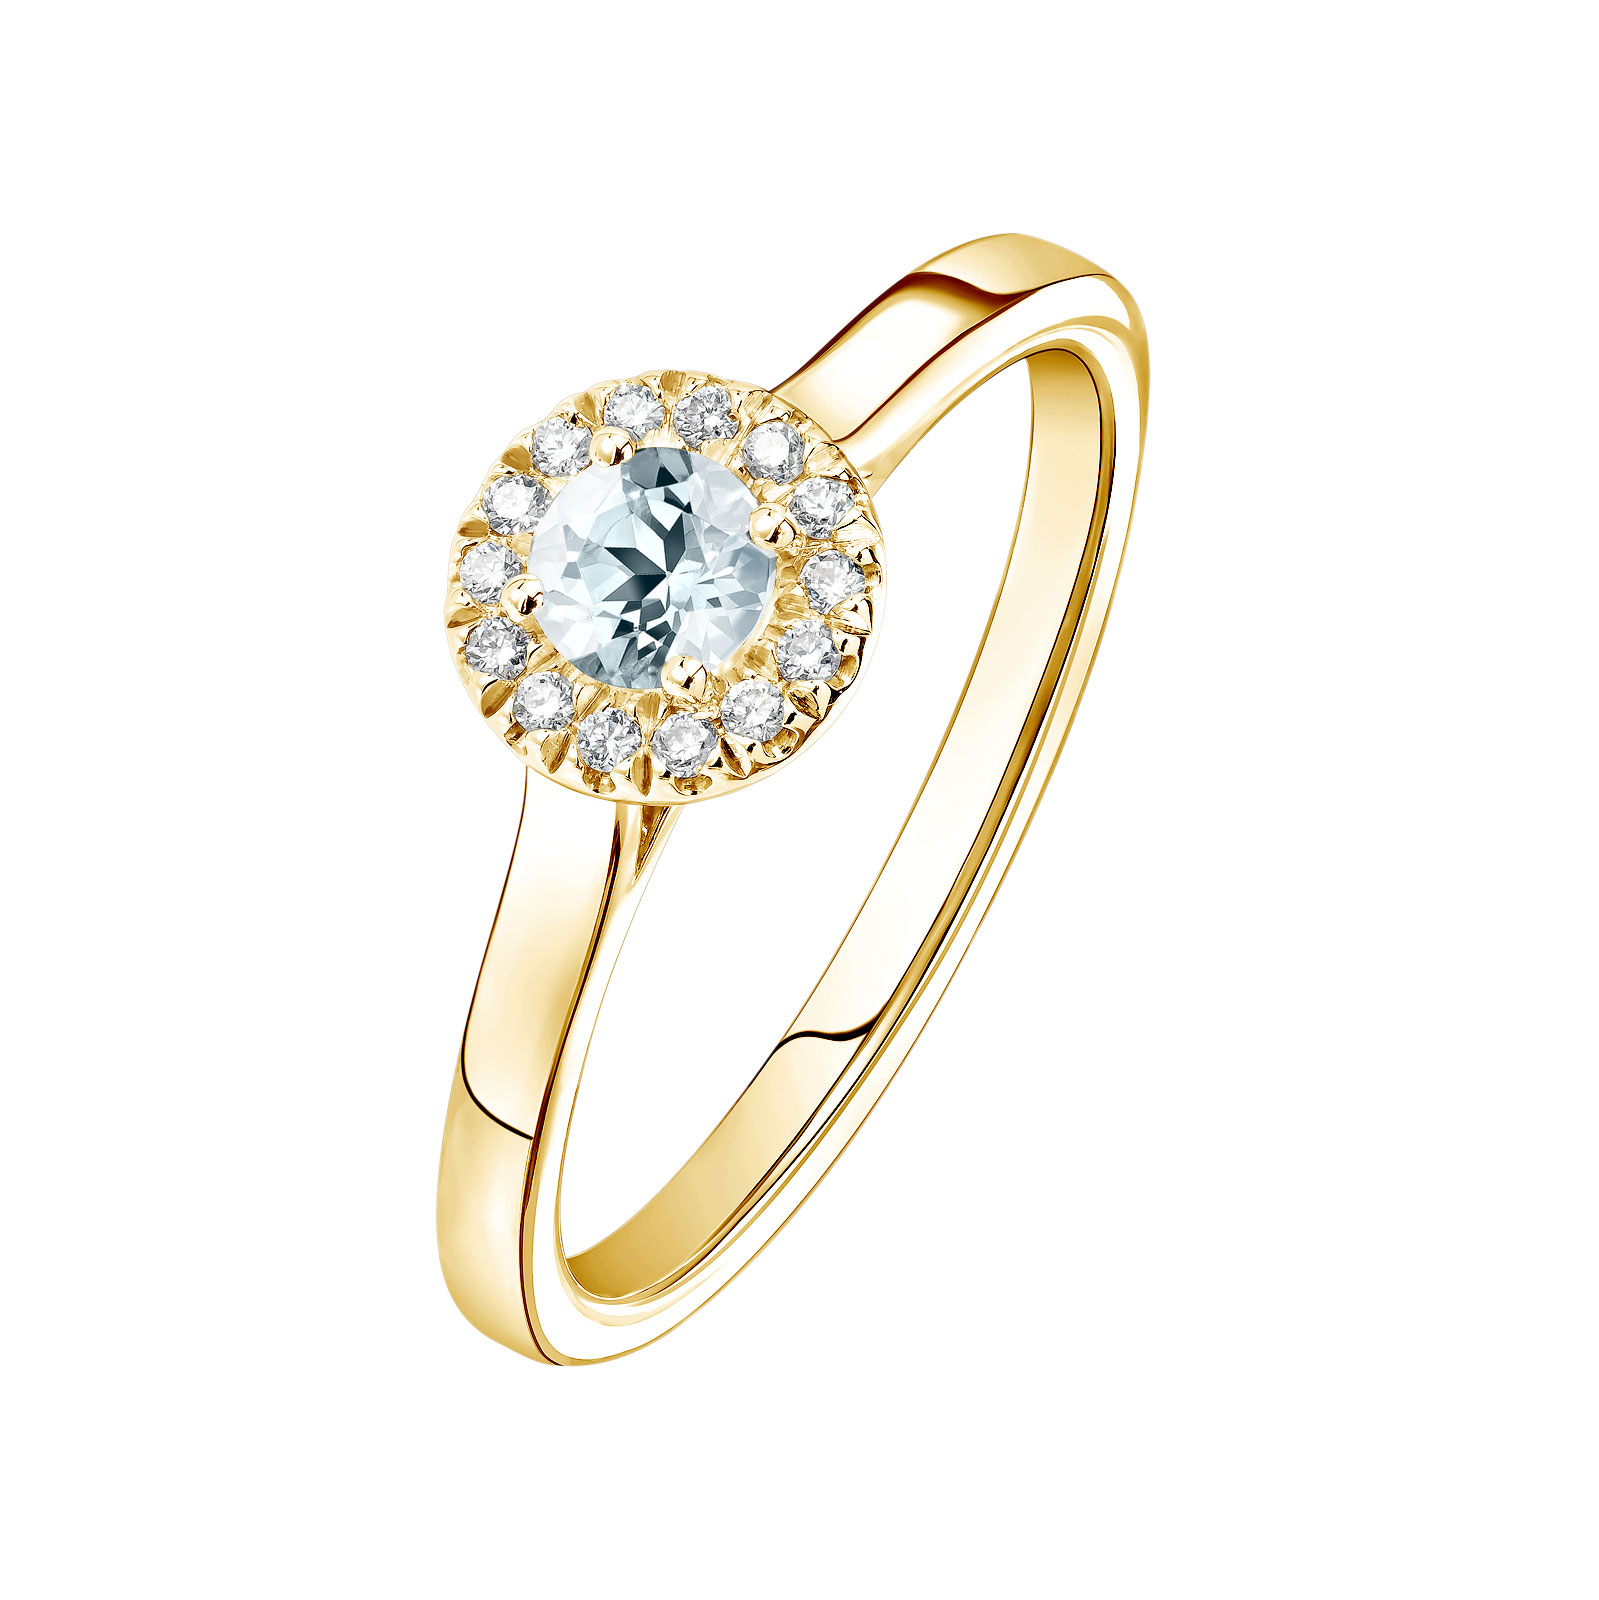 Bague Or jaune Aigue-marine et diamants Rétromantique S 1